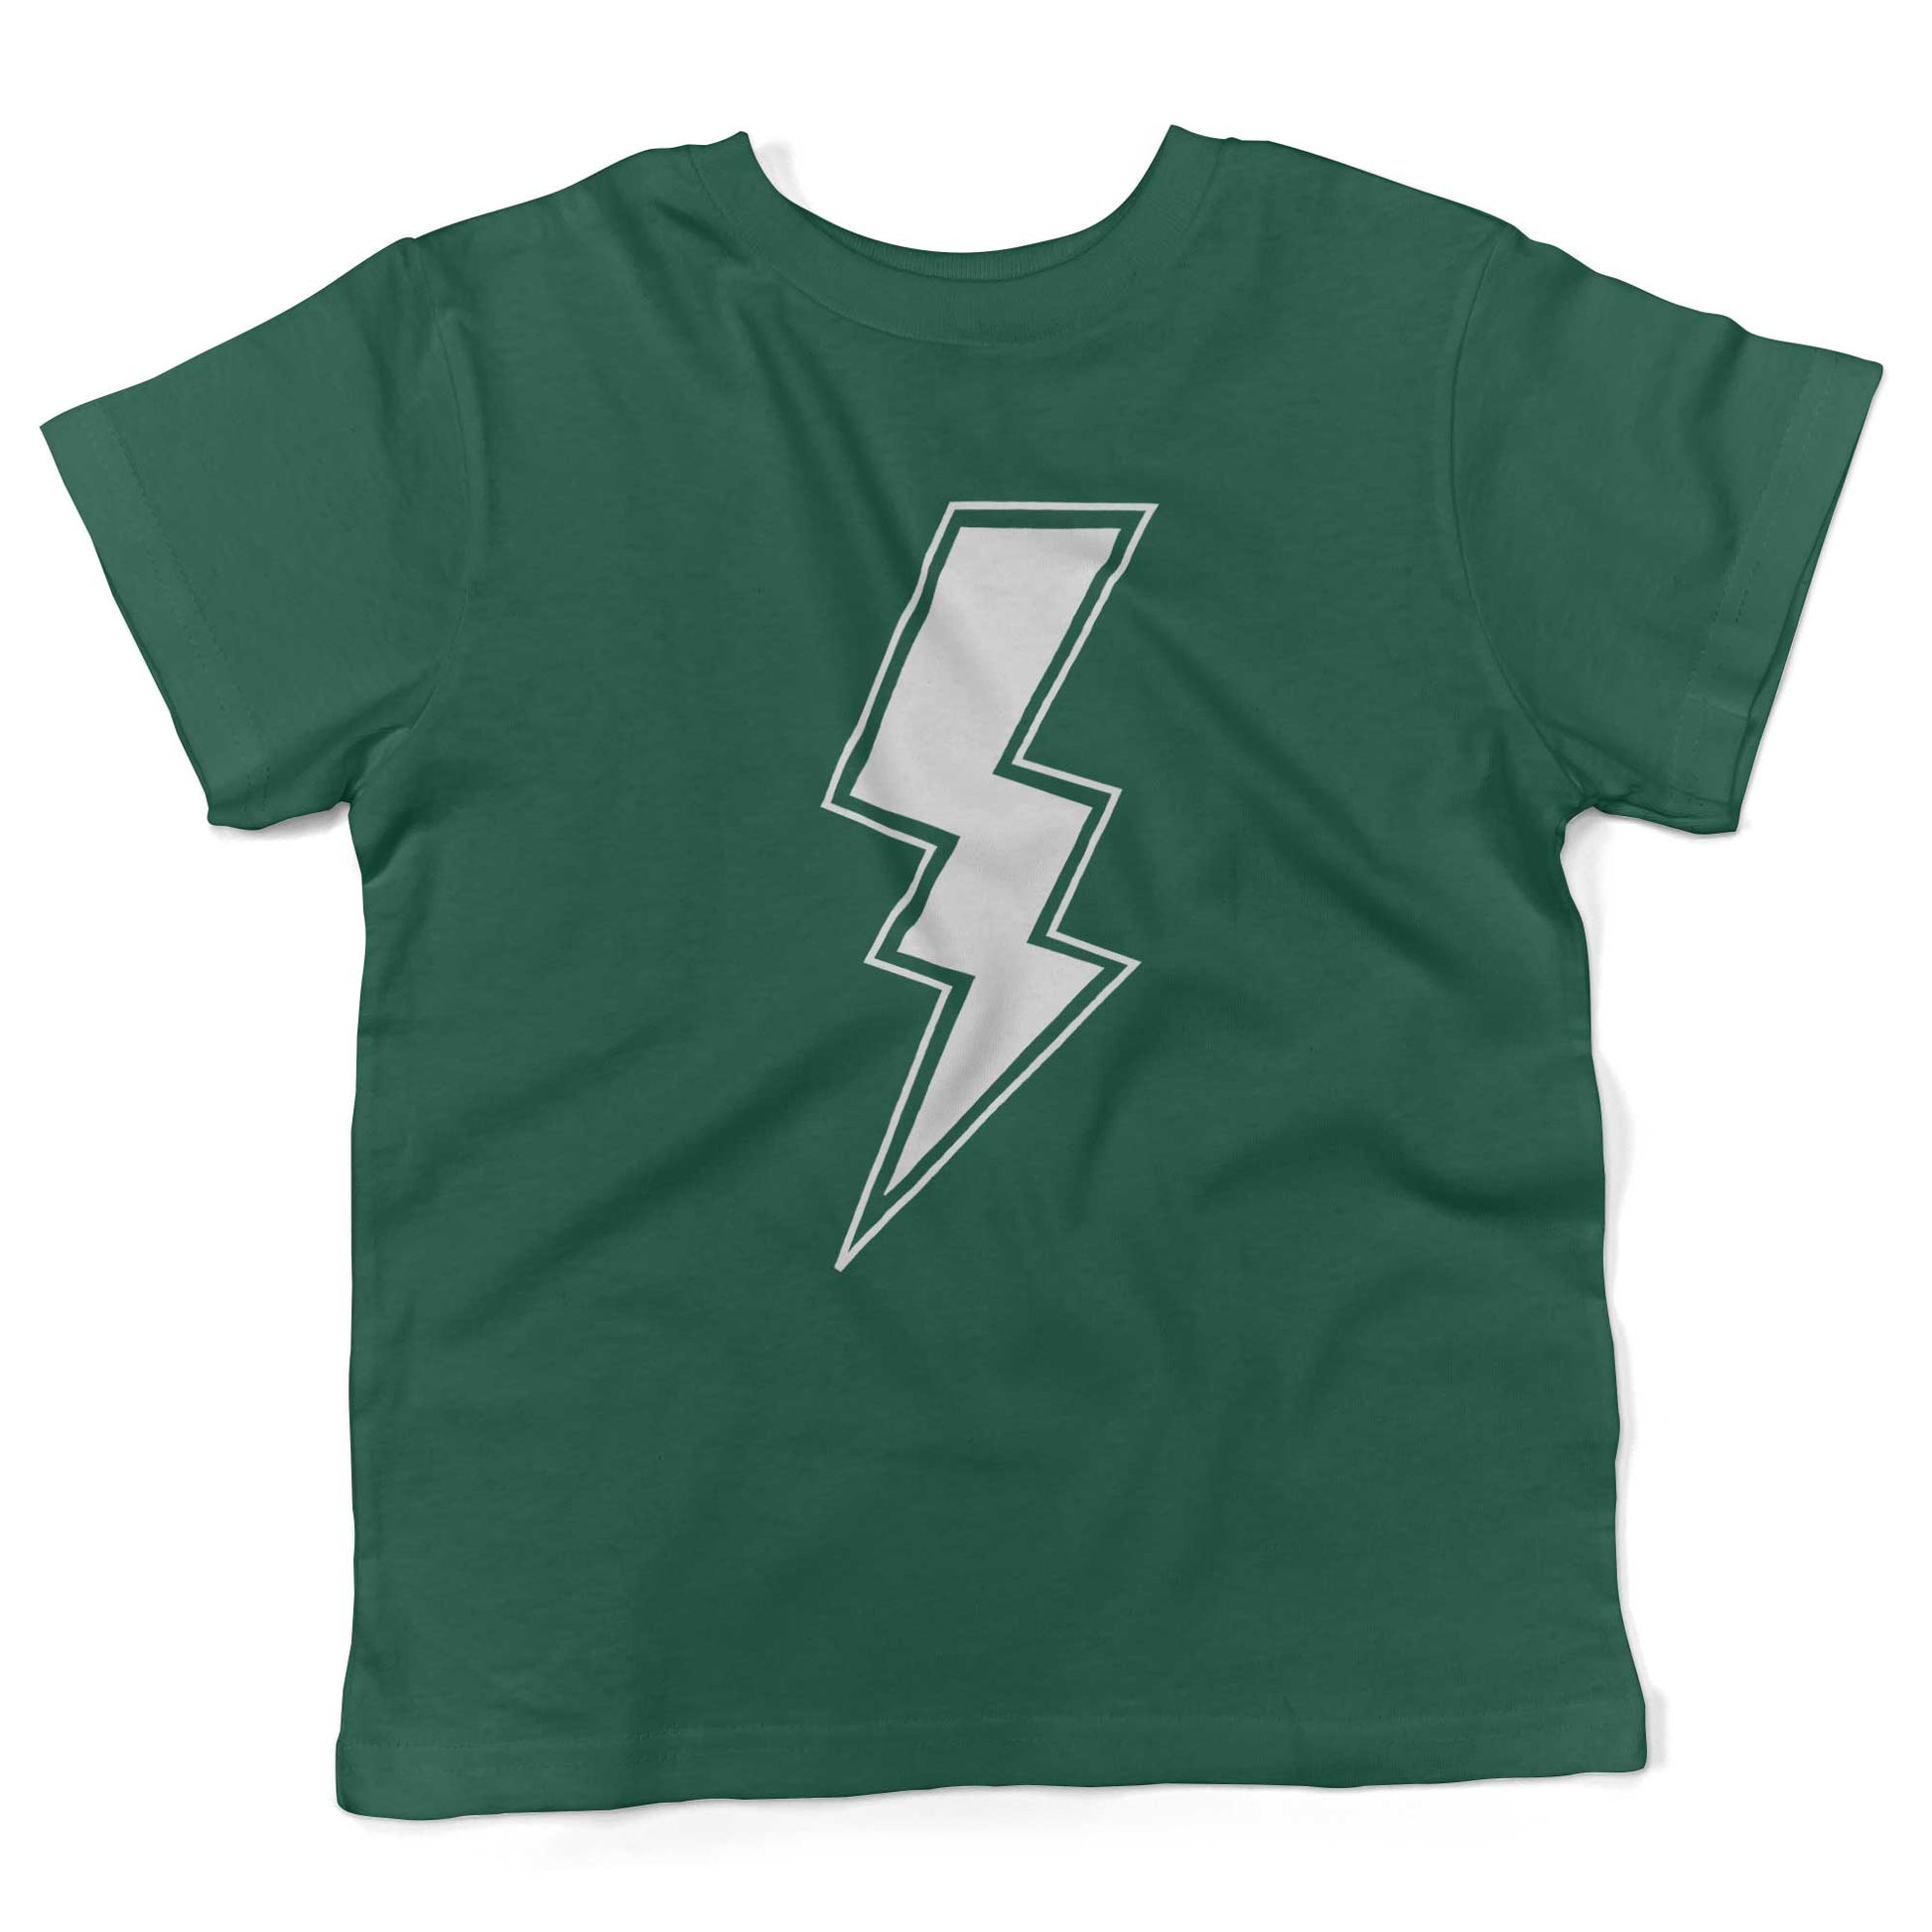 Giant Lightning Bolt Toddler Shirt-Kelly Green-2T